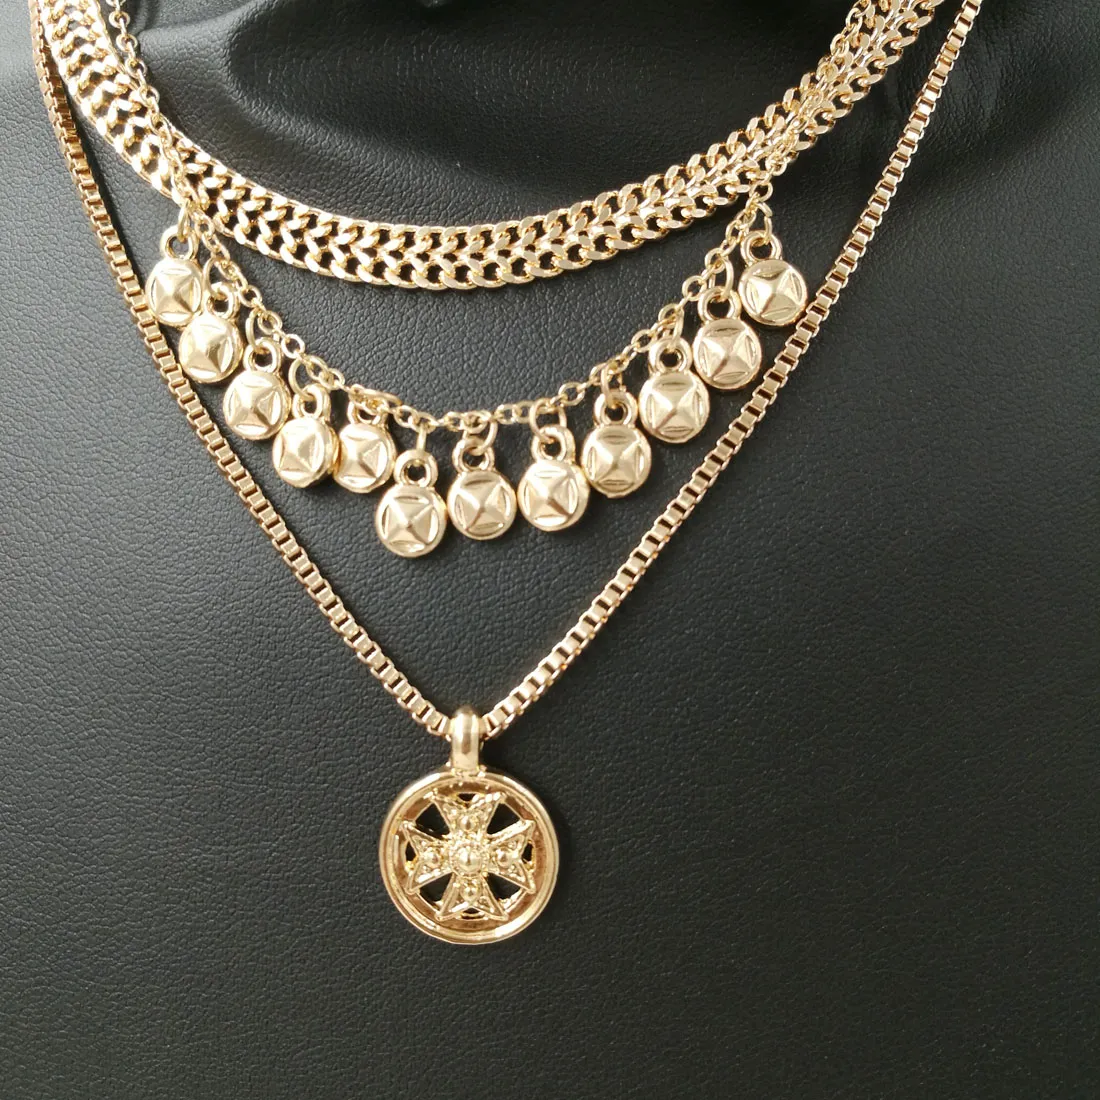 Marca de moda Punk cadena de Metal gargantillas de monedas collares para mujeres joyería Vintage collares con colgantes de oro collar grueso 7637571